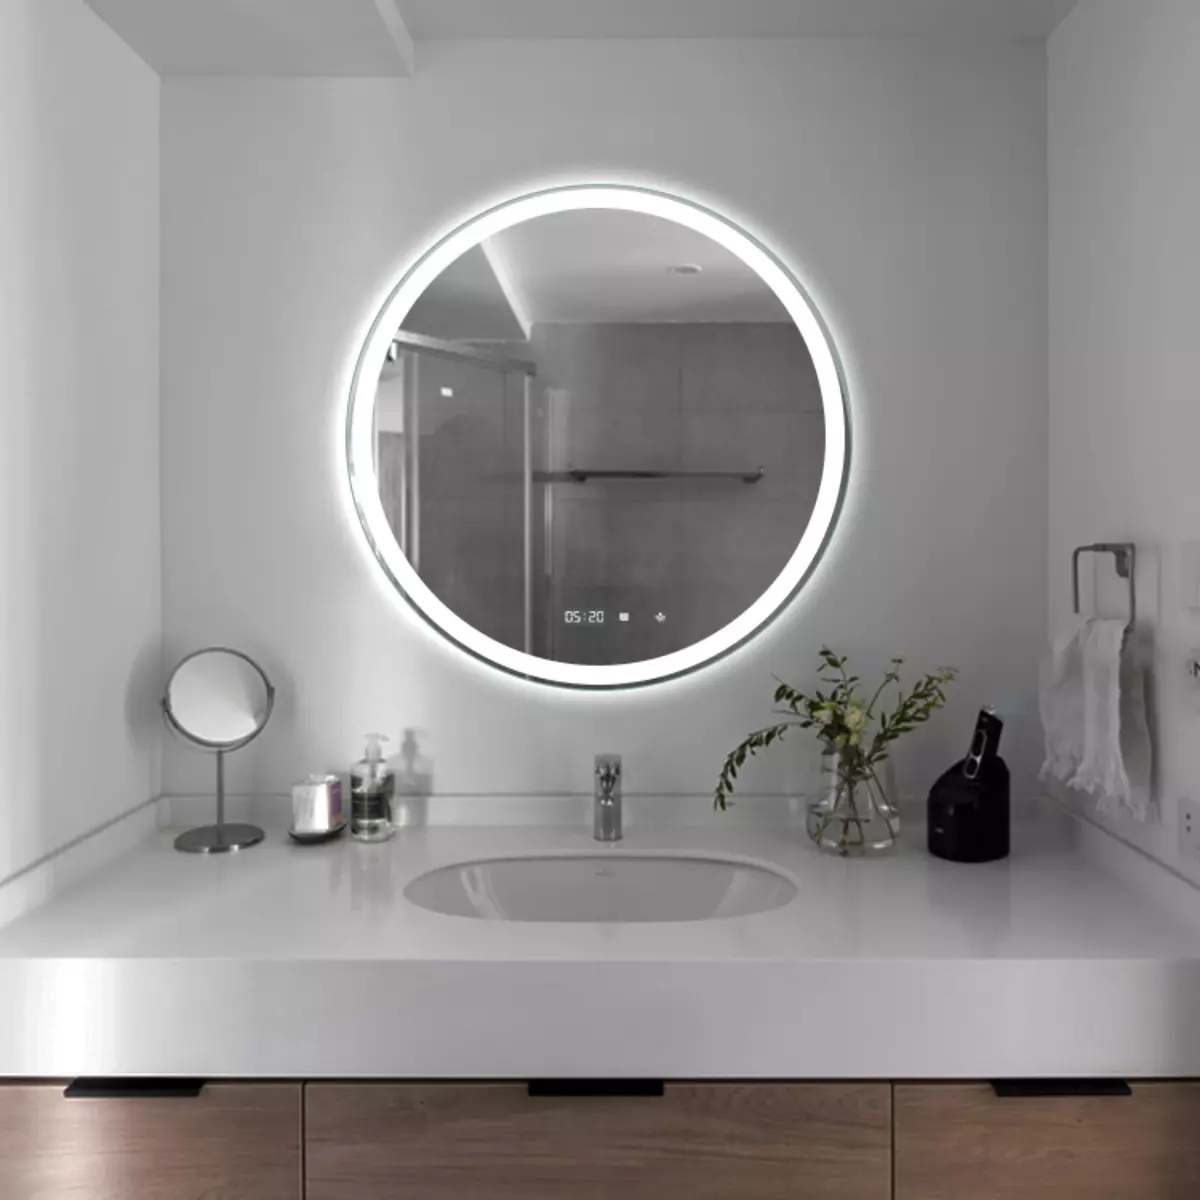 Miroir rond dans la salle de bain: miroirs design dans un cadre en bois, miroirs ronds de couleur noire et autre pour la salle de bain 10427_24